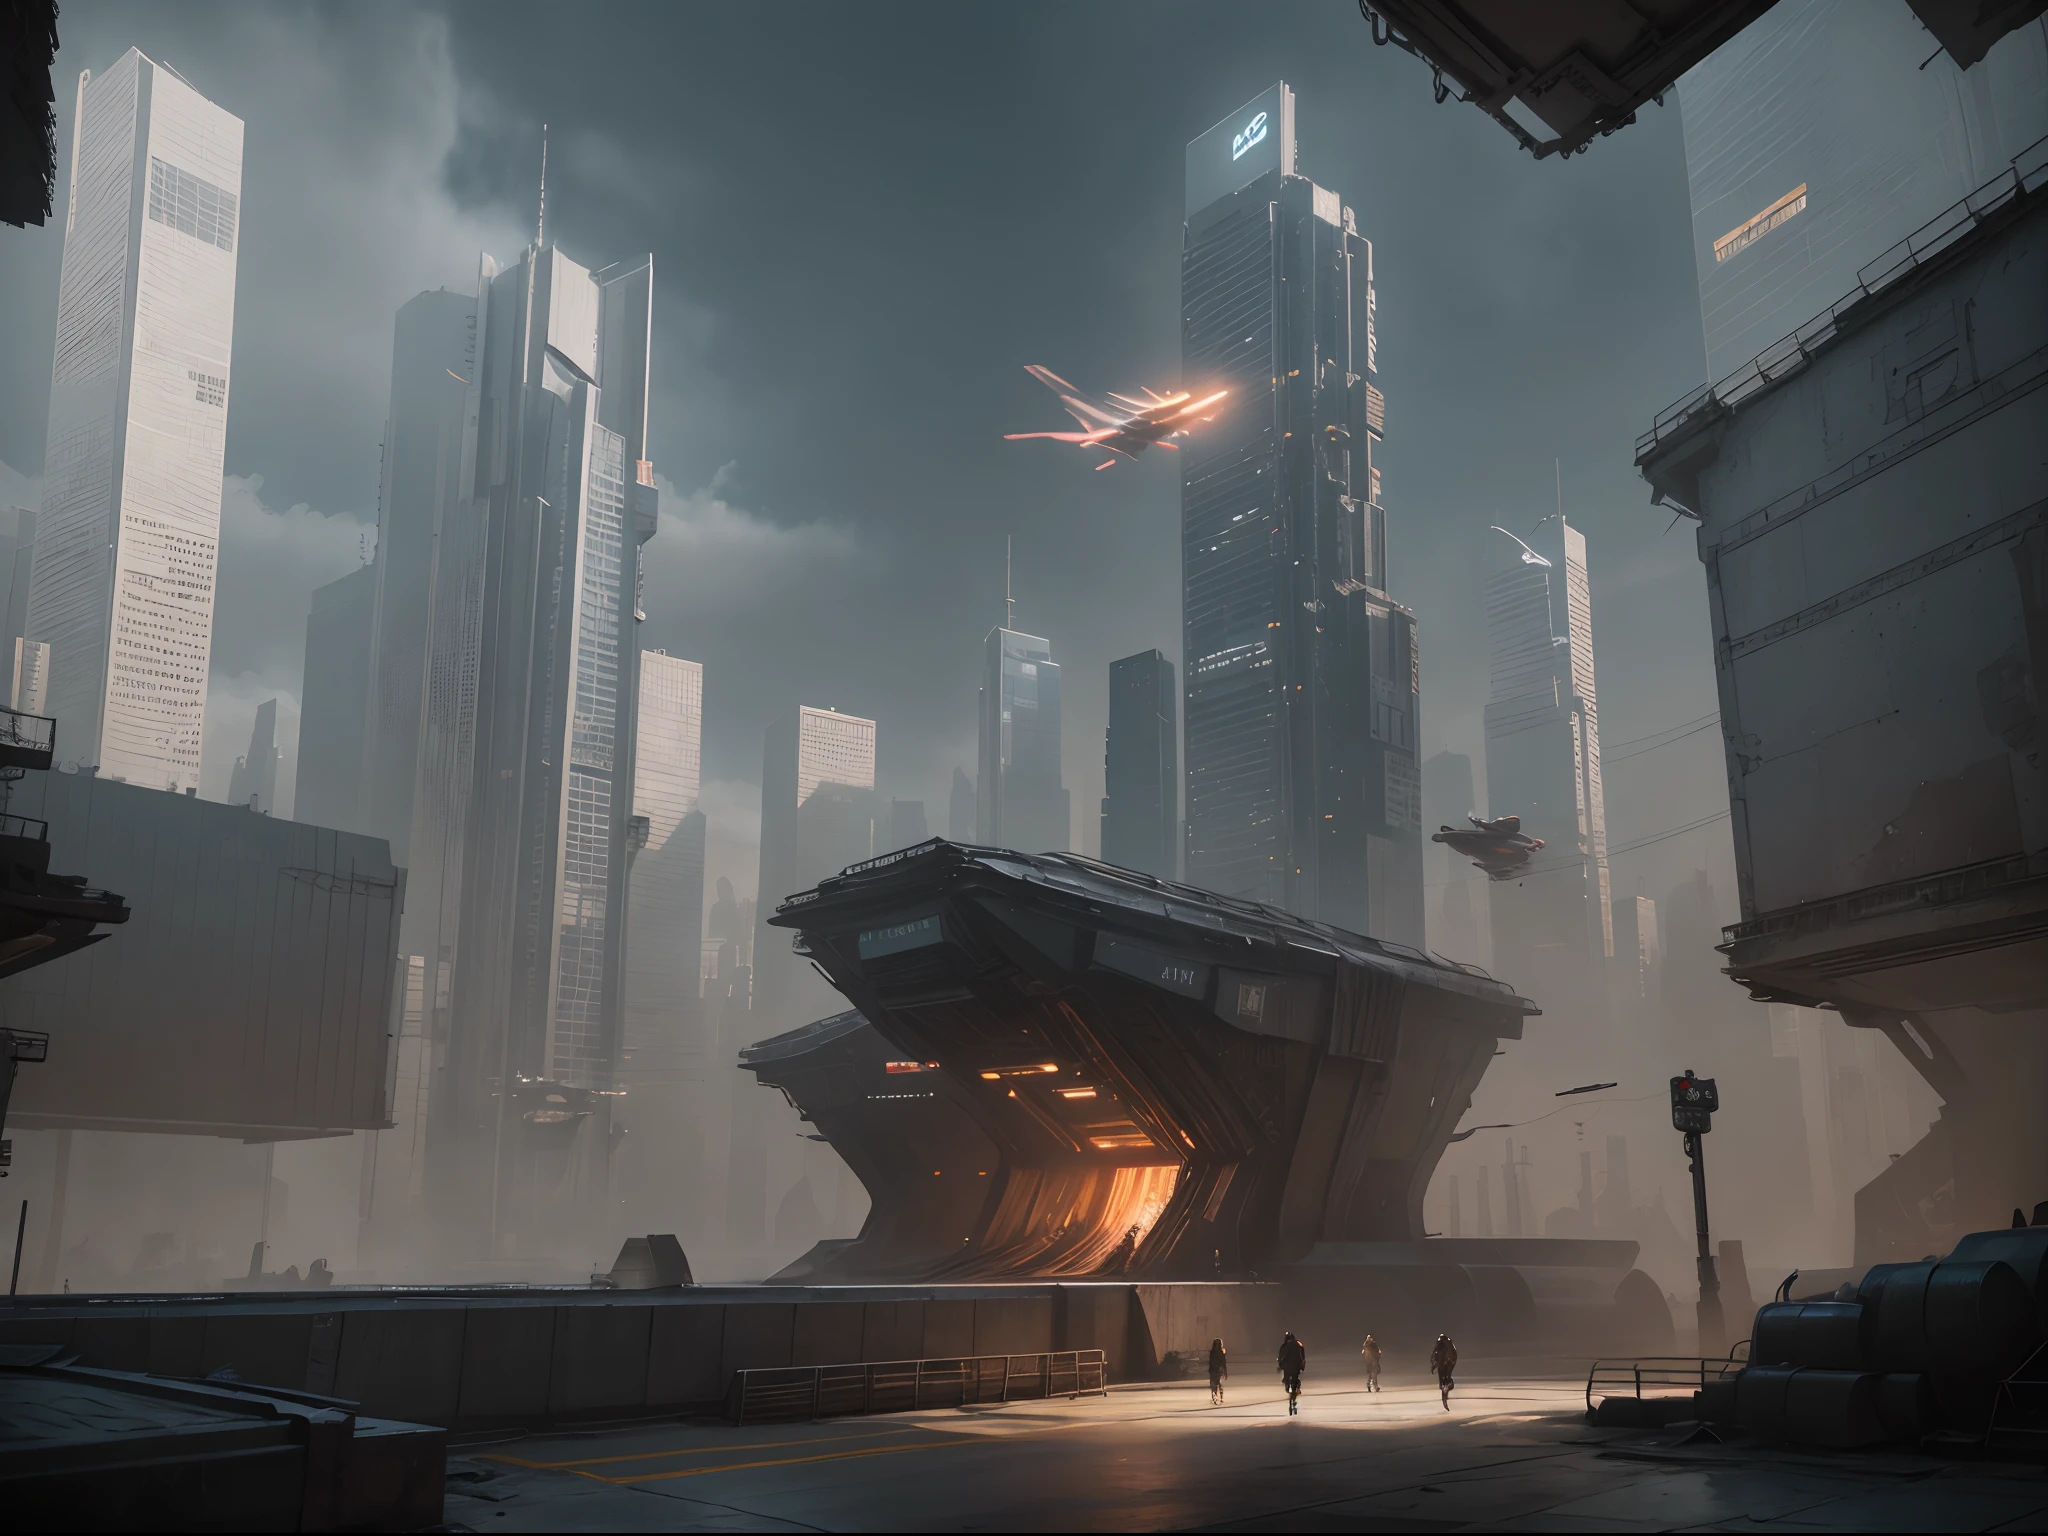 Cyberpunk-Stadtbild mit hoch aufragenden Wolkenkratzern, Leuchtreklamen, und fliegende Autos.